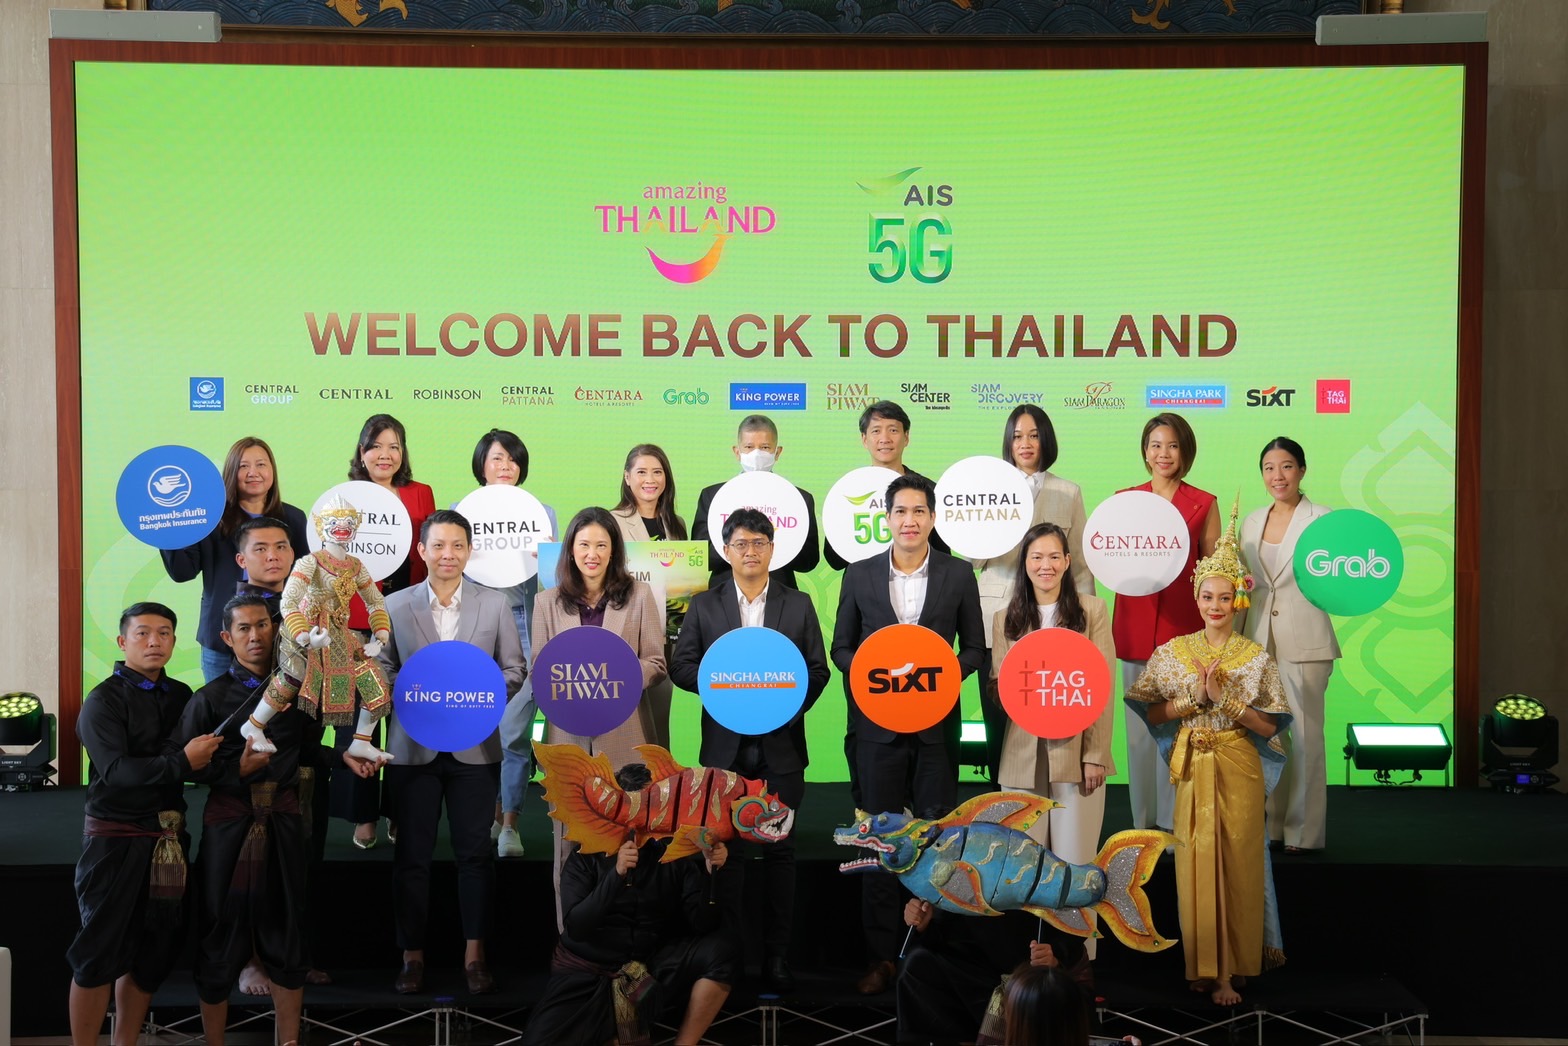 ททท. ผนึก AIS 5G ชูแคมเปญ “Welcome Back to Thailand” ดึงนักท่องเที่ยวต่างชาติเที่ยวไทย ผ่าน Amazing Thailand SIM นำดิจิทัลครอบคลุมทุกมิติ